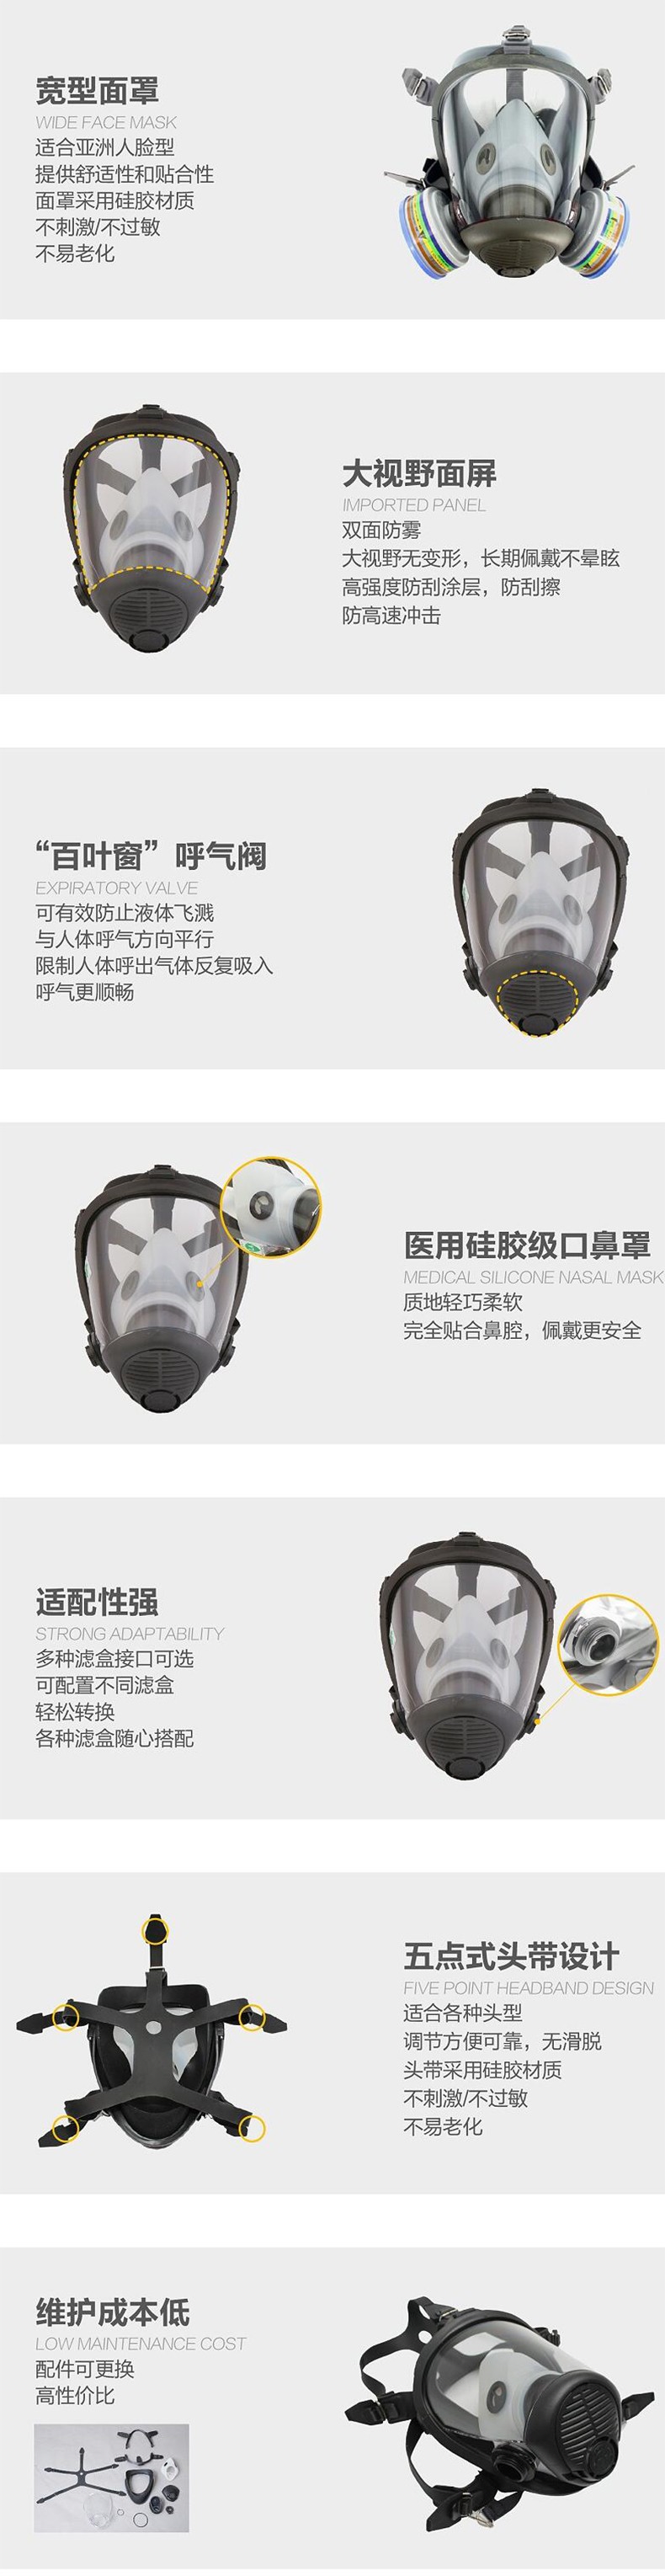 华信威保小金罩XP300R防尘防毒过滤全面罩图片4